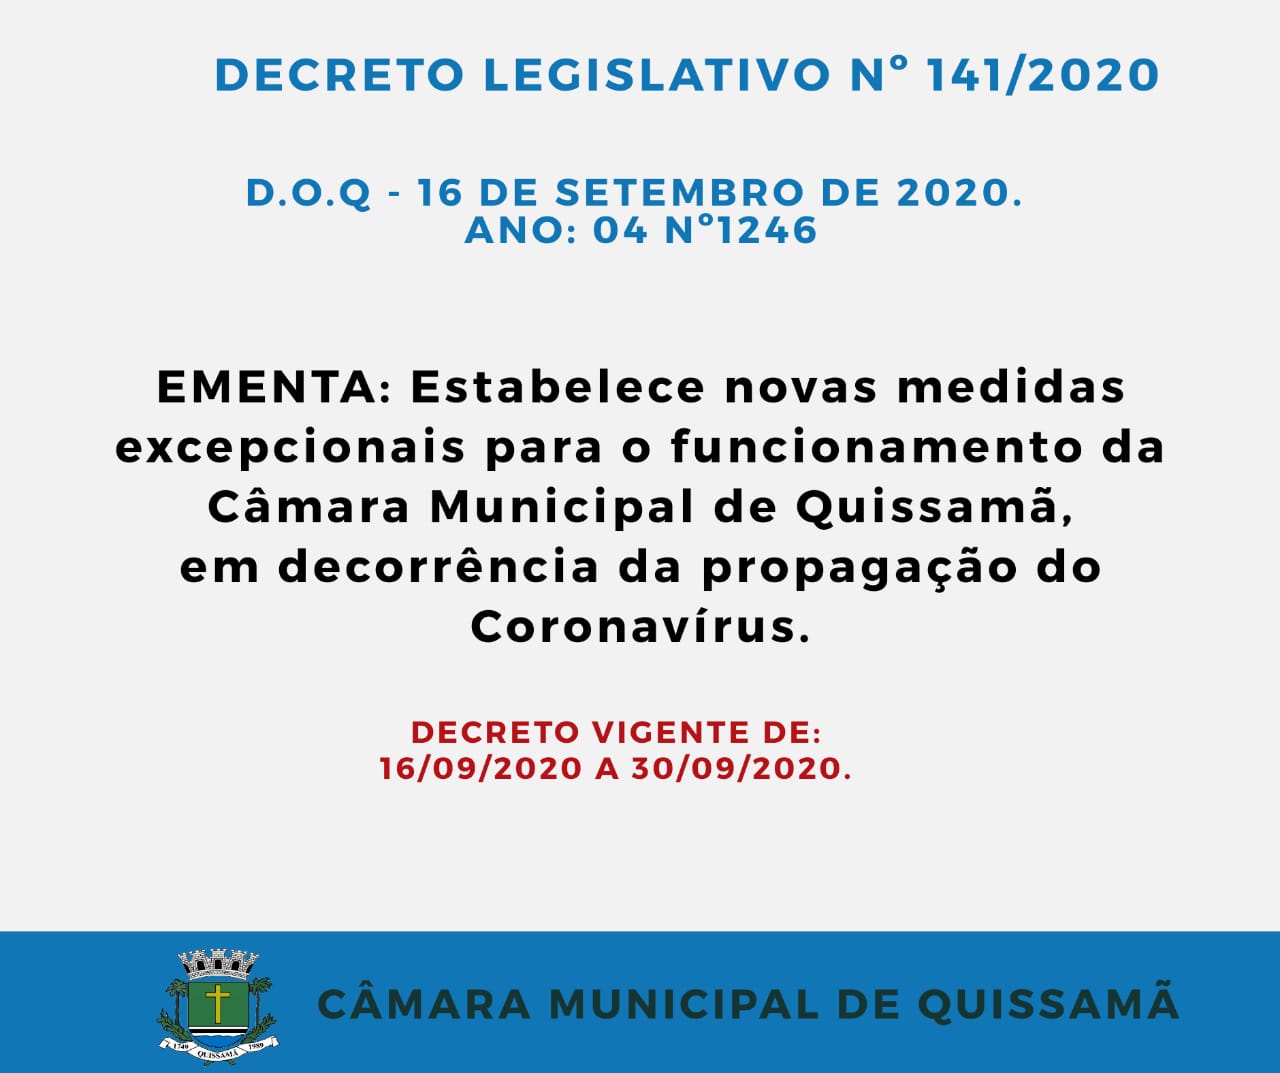 Novo Decreto estabelece novas medidas excepcionais para o funcionamento da Câmara Municipal de Quissamã, em decorrência da propagação do Coronavírus